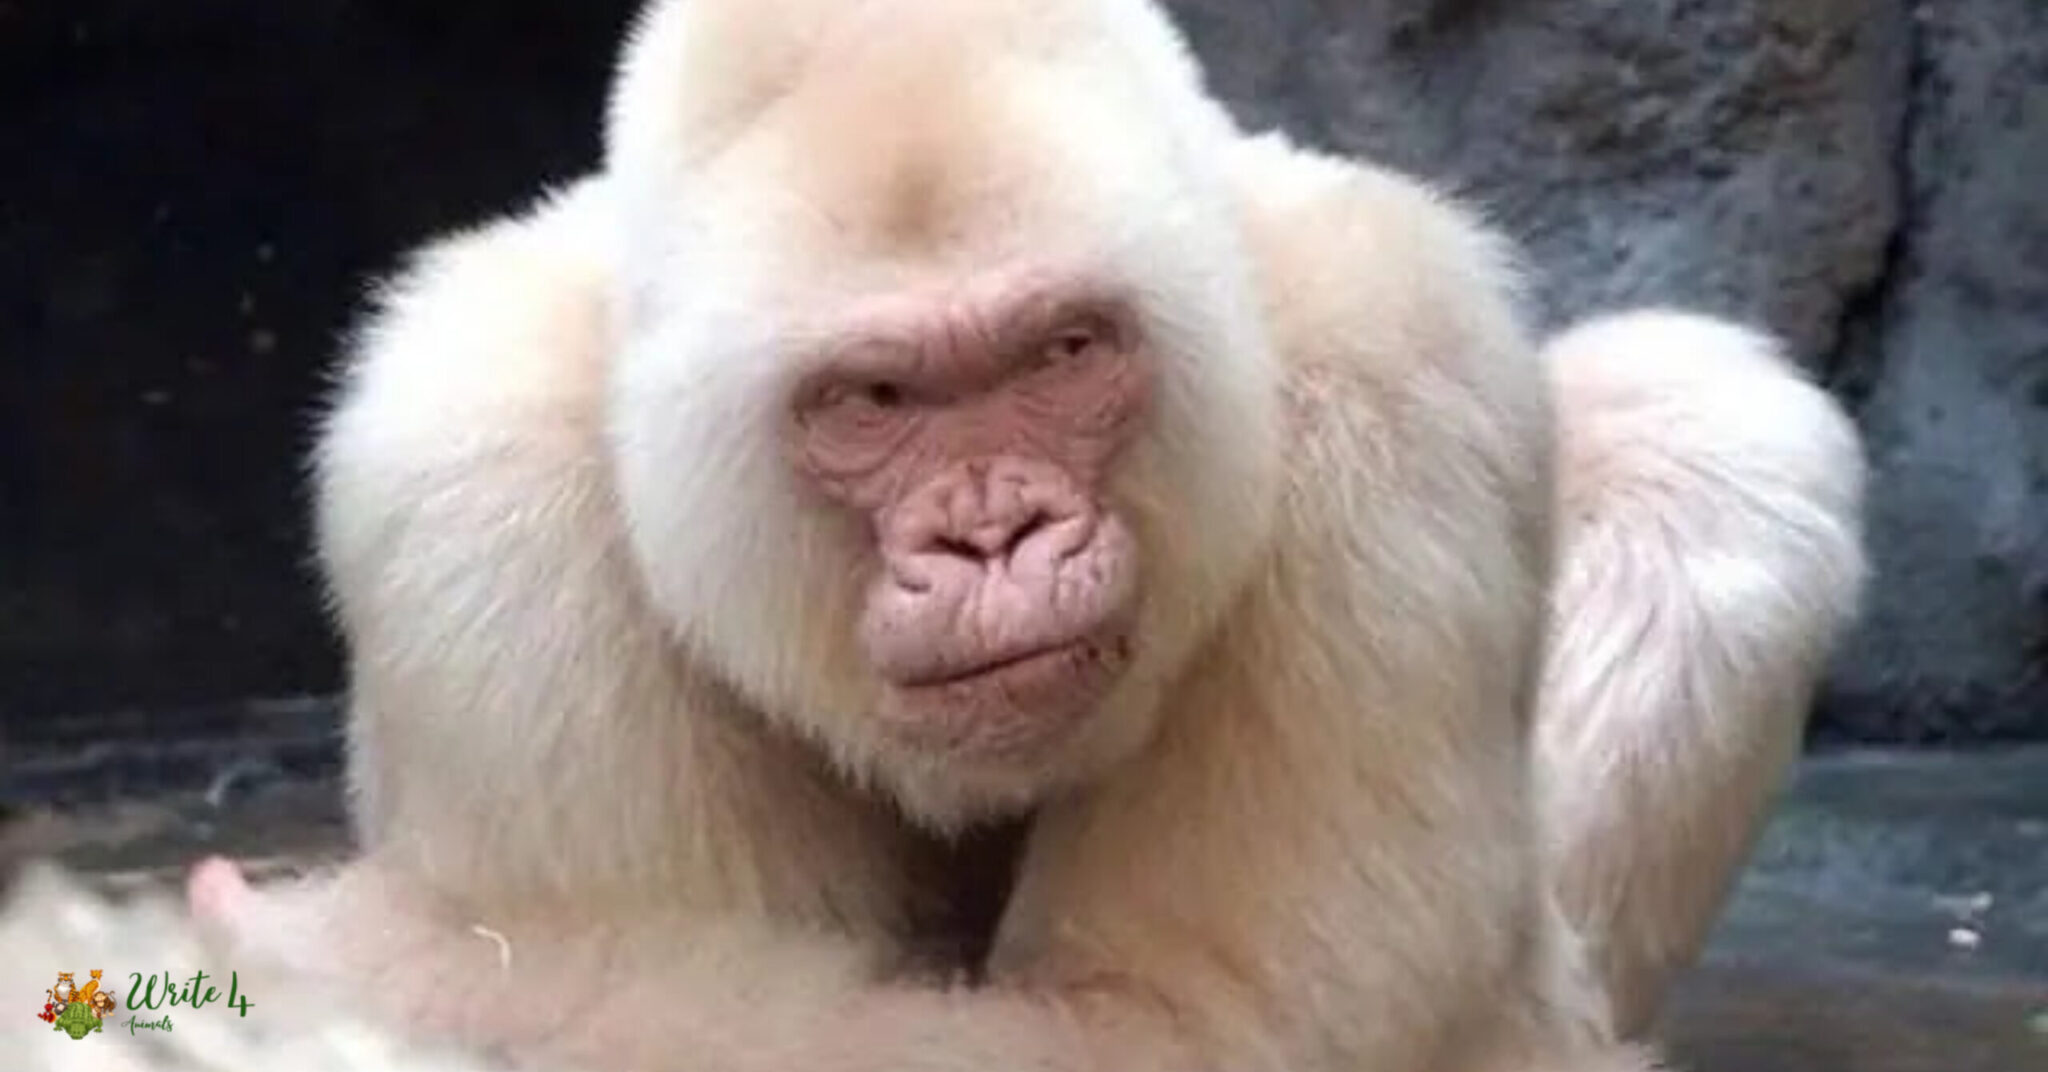 Albino Monkey